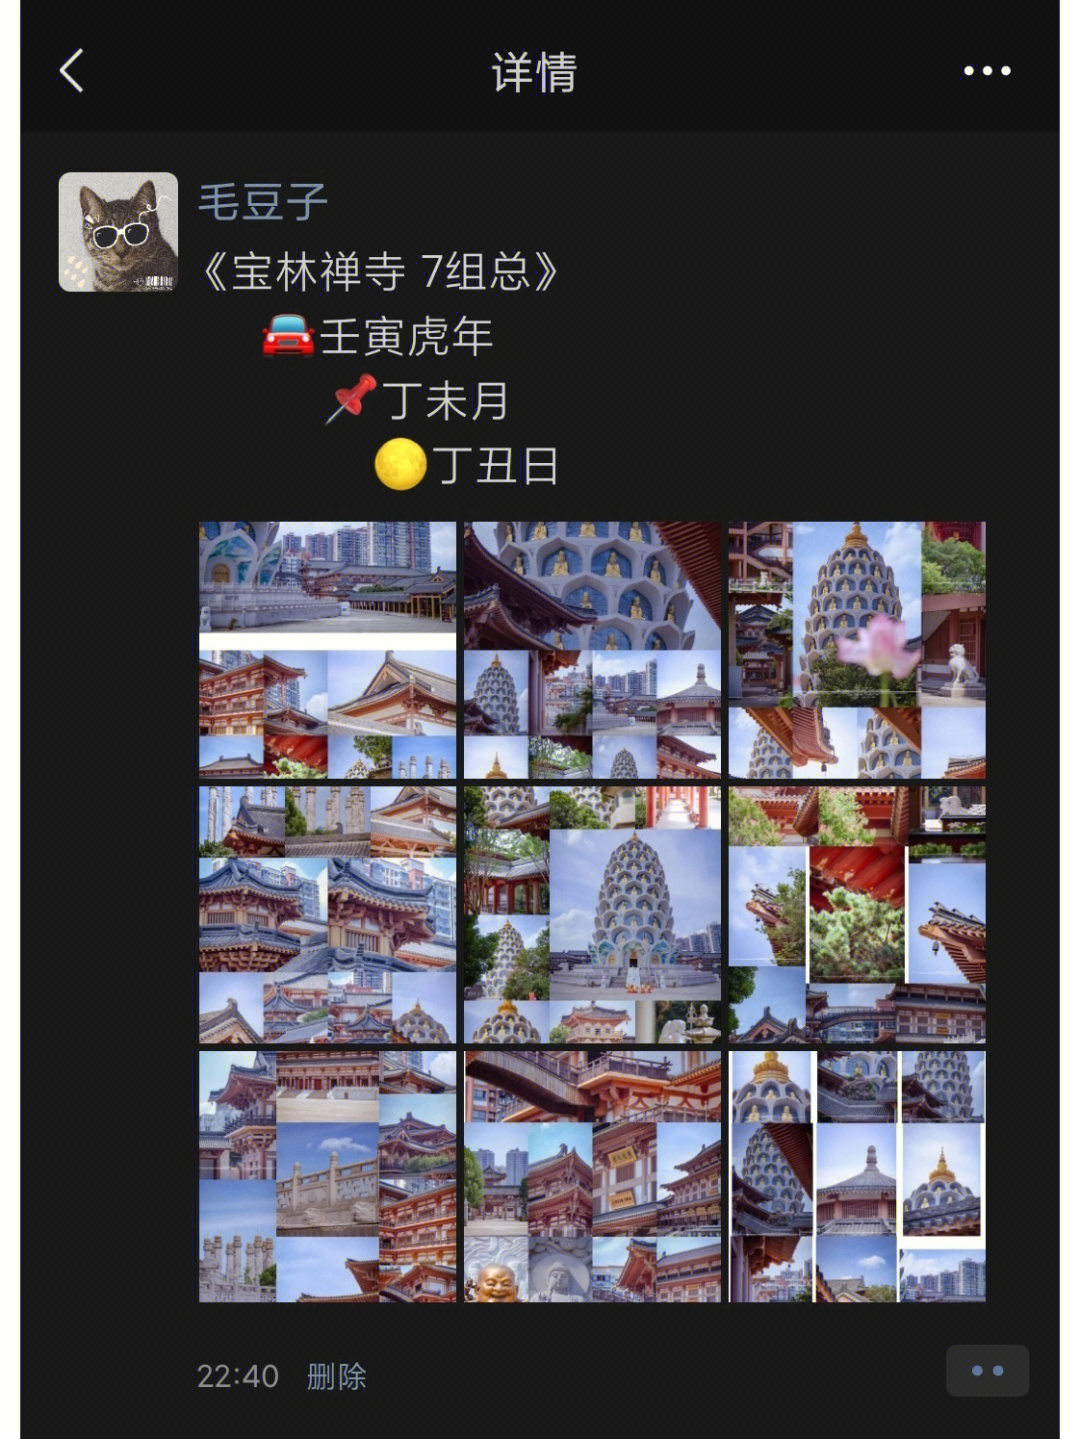 乐昌宝林禅寺规划图图片